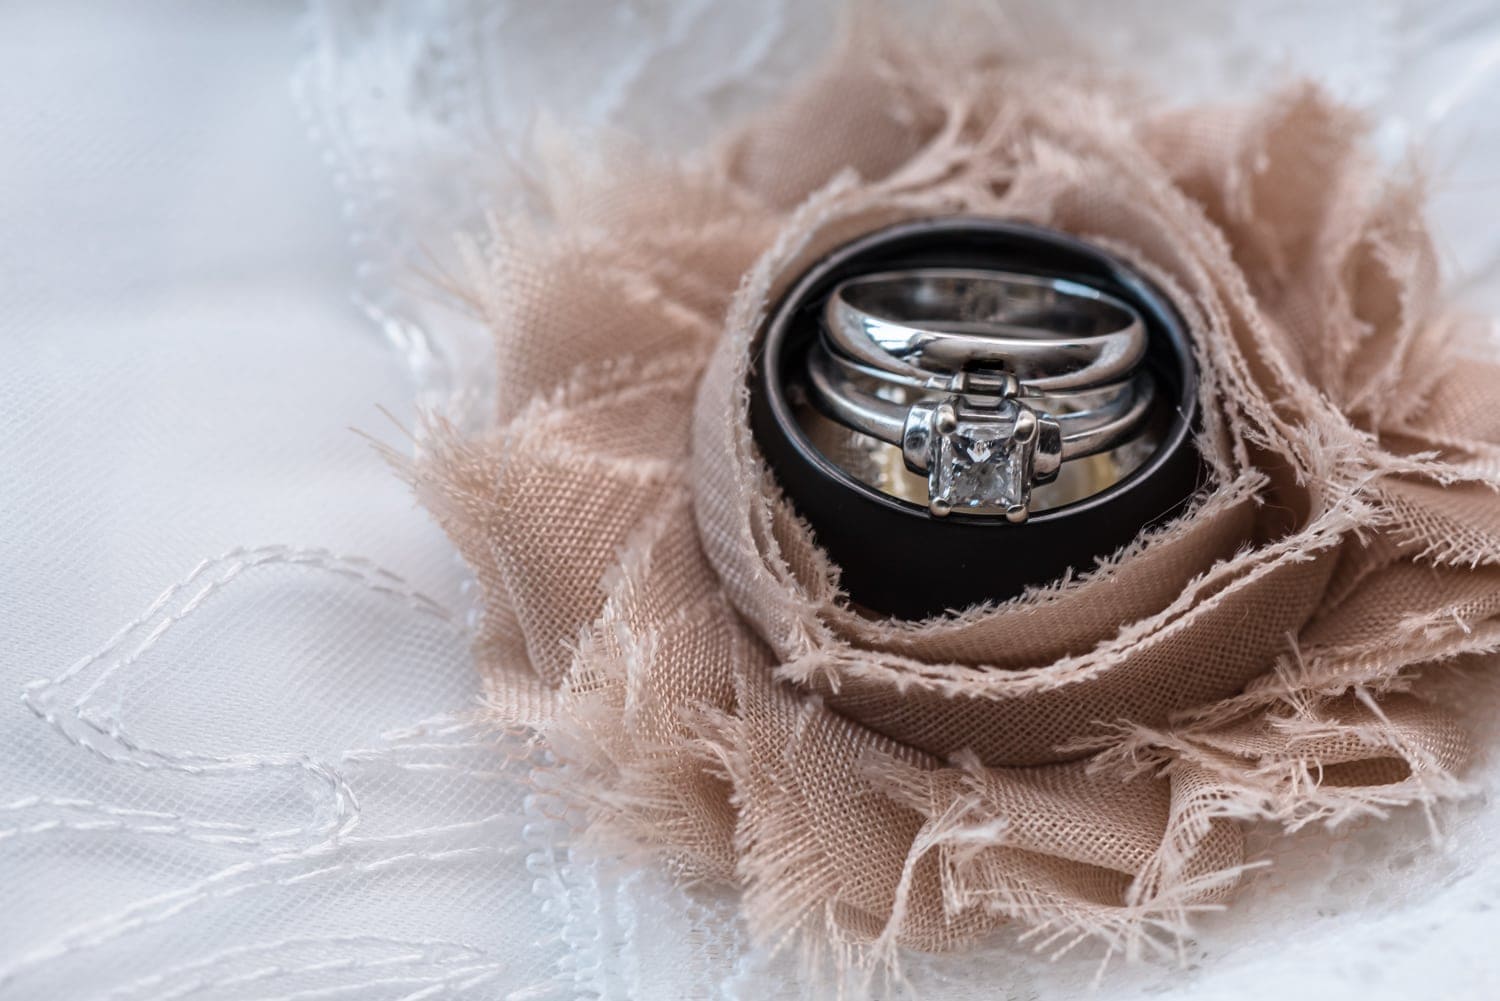 The wedding rings inside an ivory flower on the wedding garter belt.